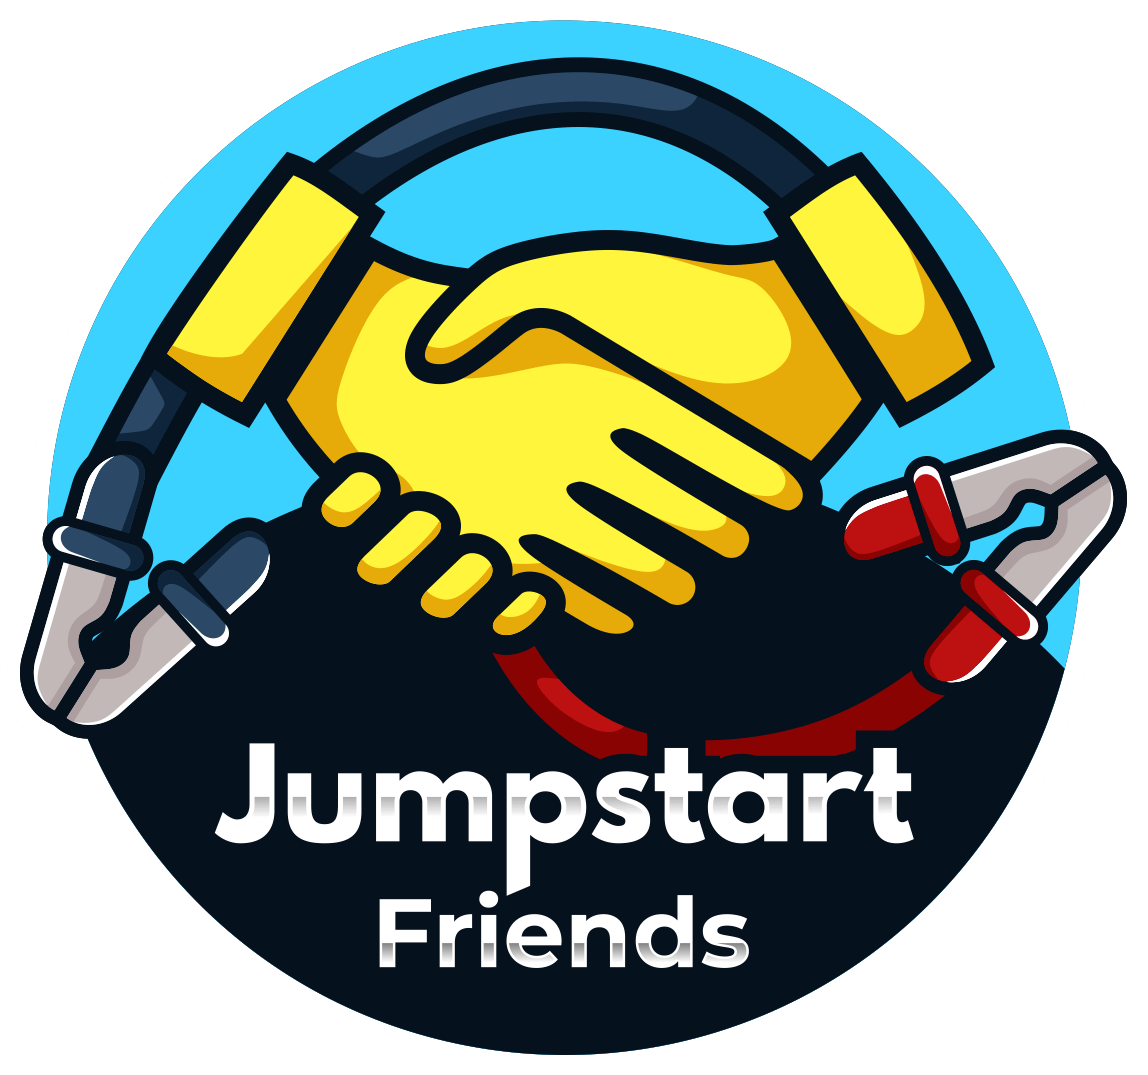 Jumpstart Friends